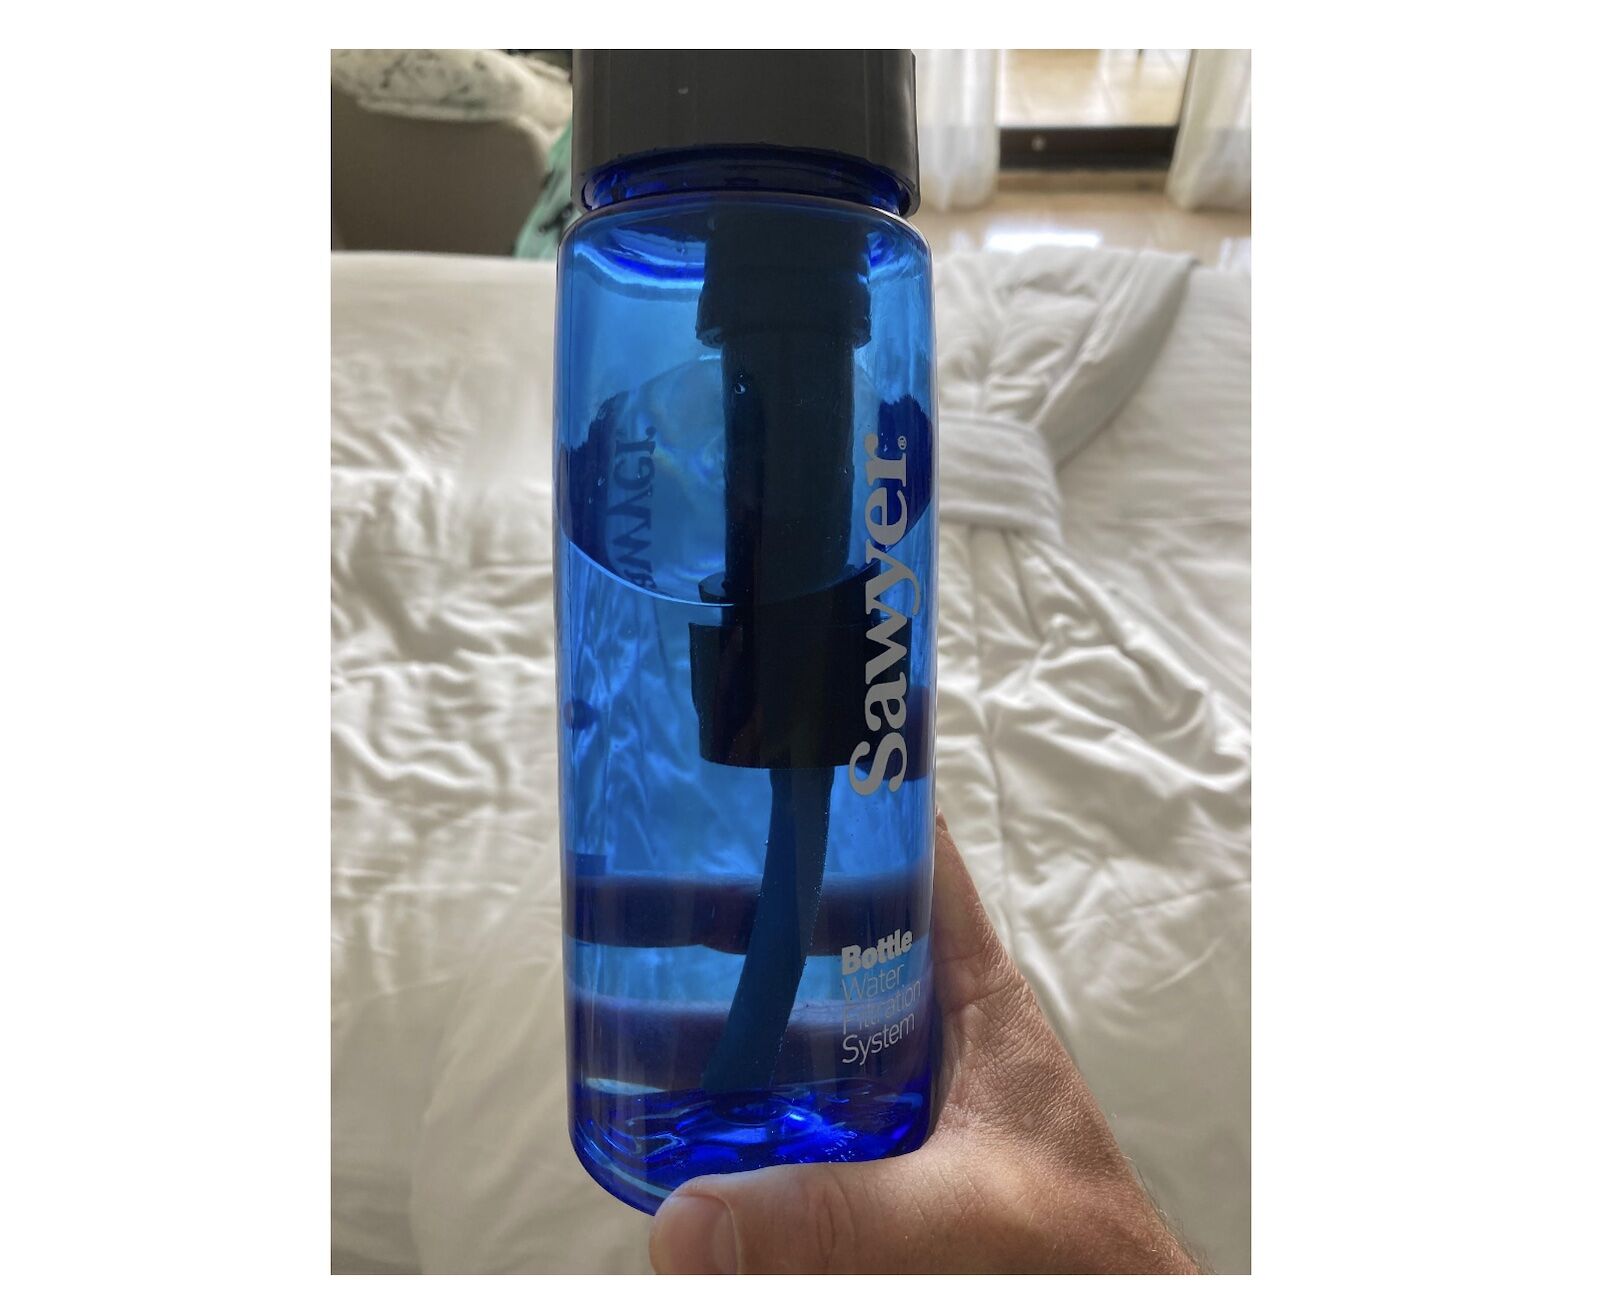 sawyer bottle water filtrations ystem